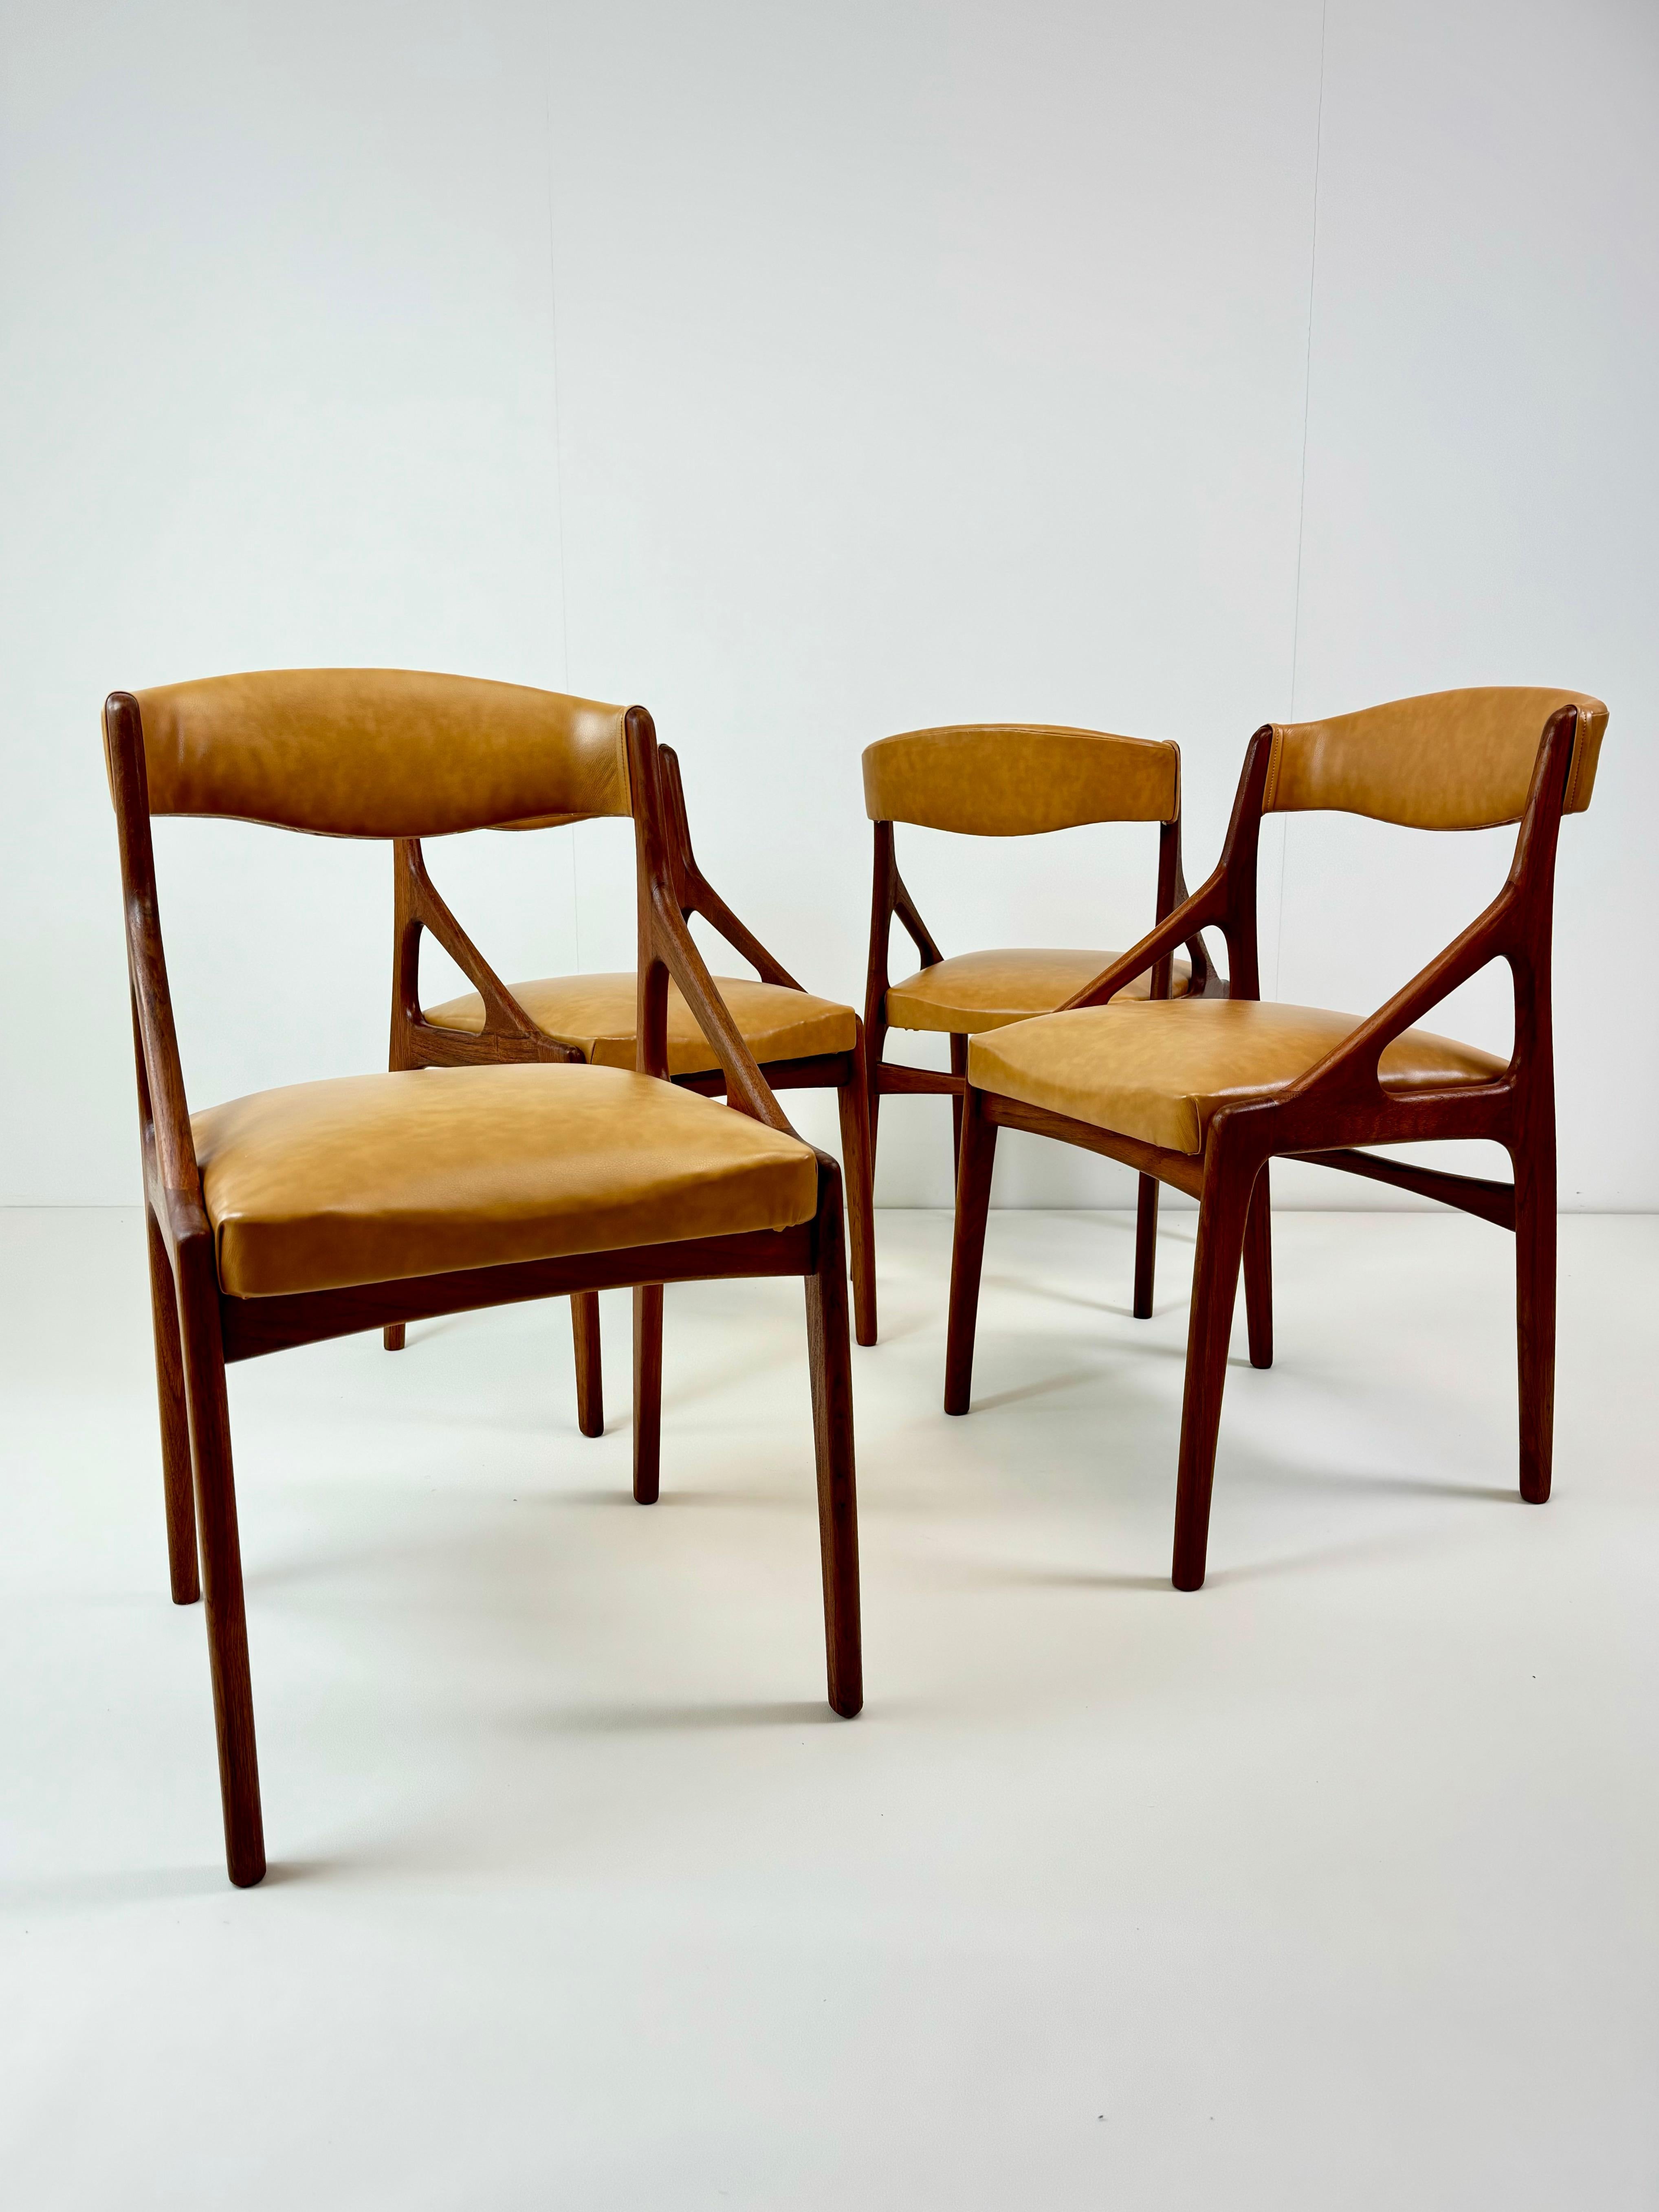 Un ensemble de quatre chaises de salle à manger modernes du milieu du siècle, fabriquées en bois de teck de haute qualité et recouvertes d'un luxueux revêtement en simili-cuir. Ces chaises ont été fabriquées en Italie vers les années 1960 dans le